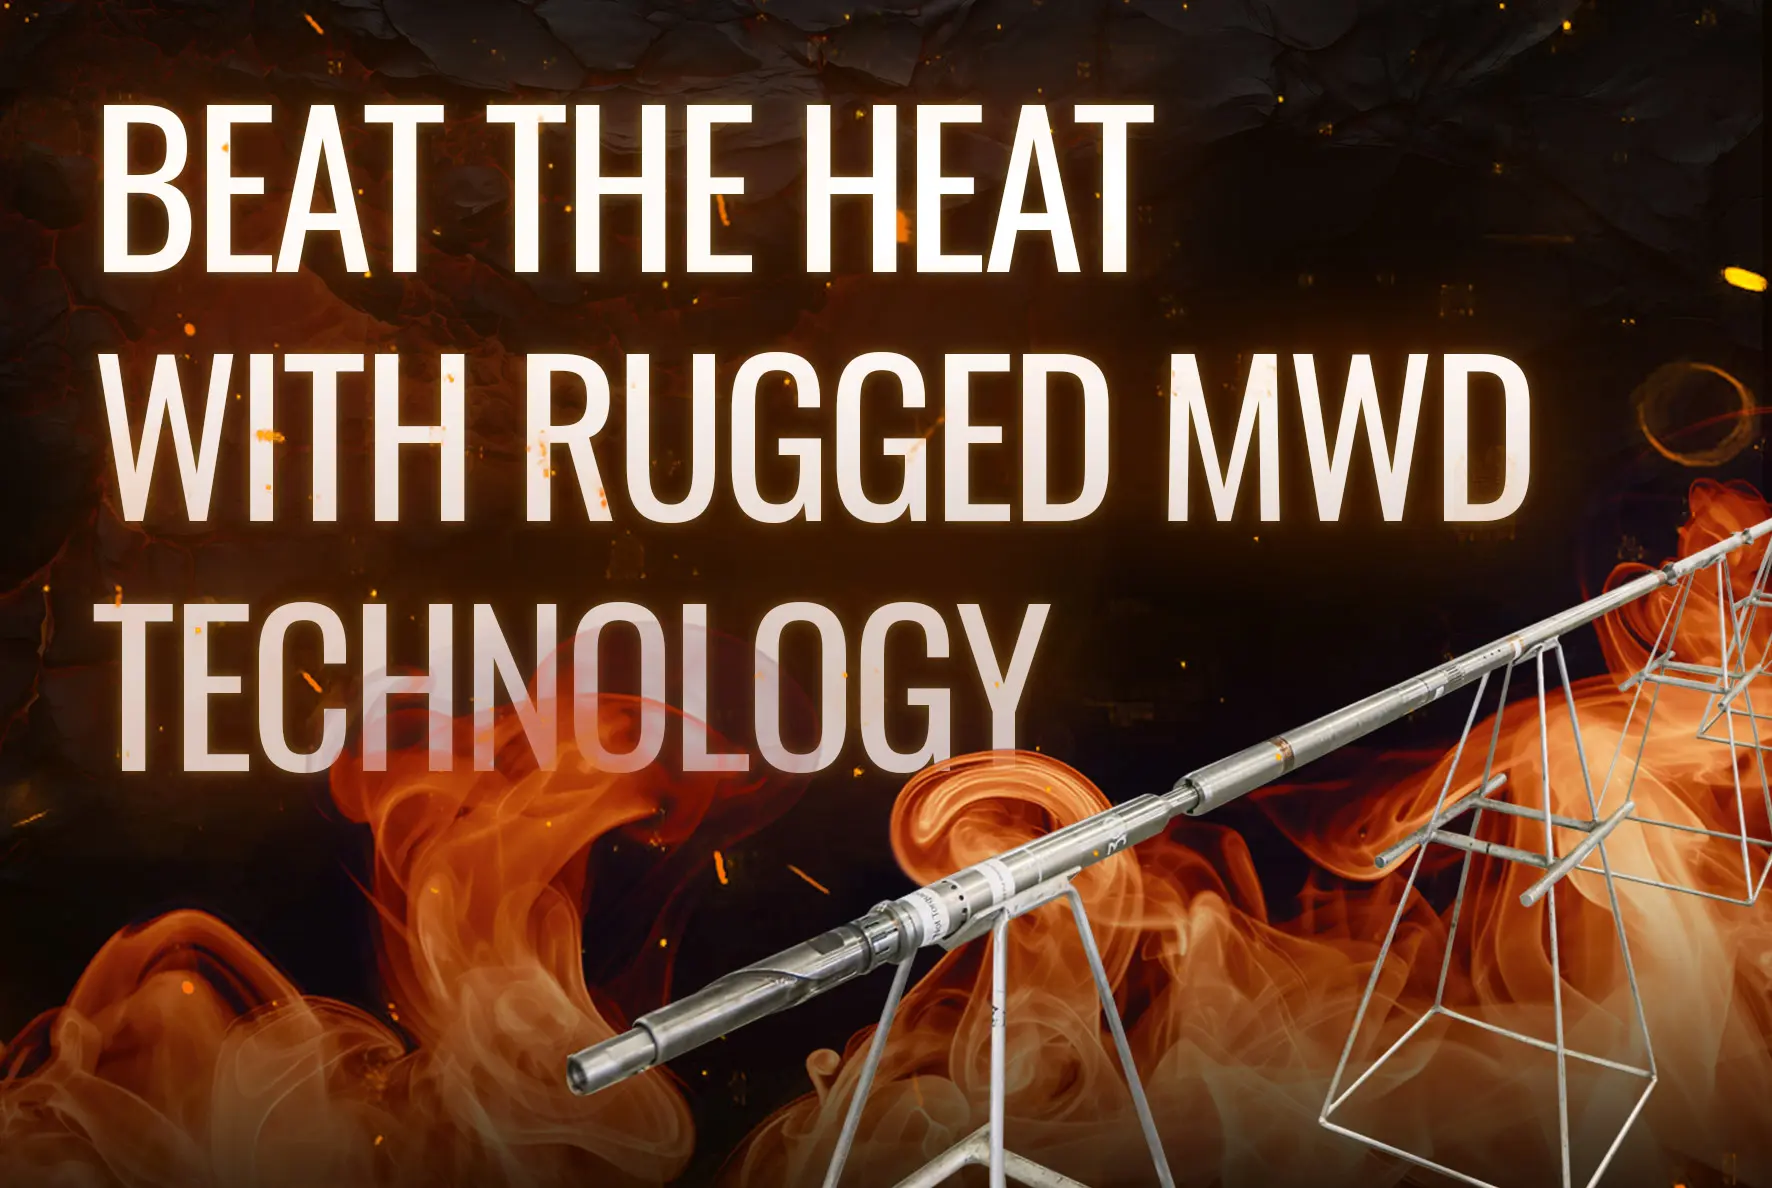 Rugged MWD Technology